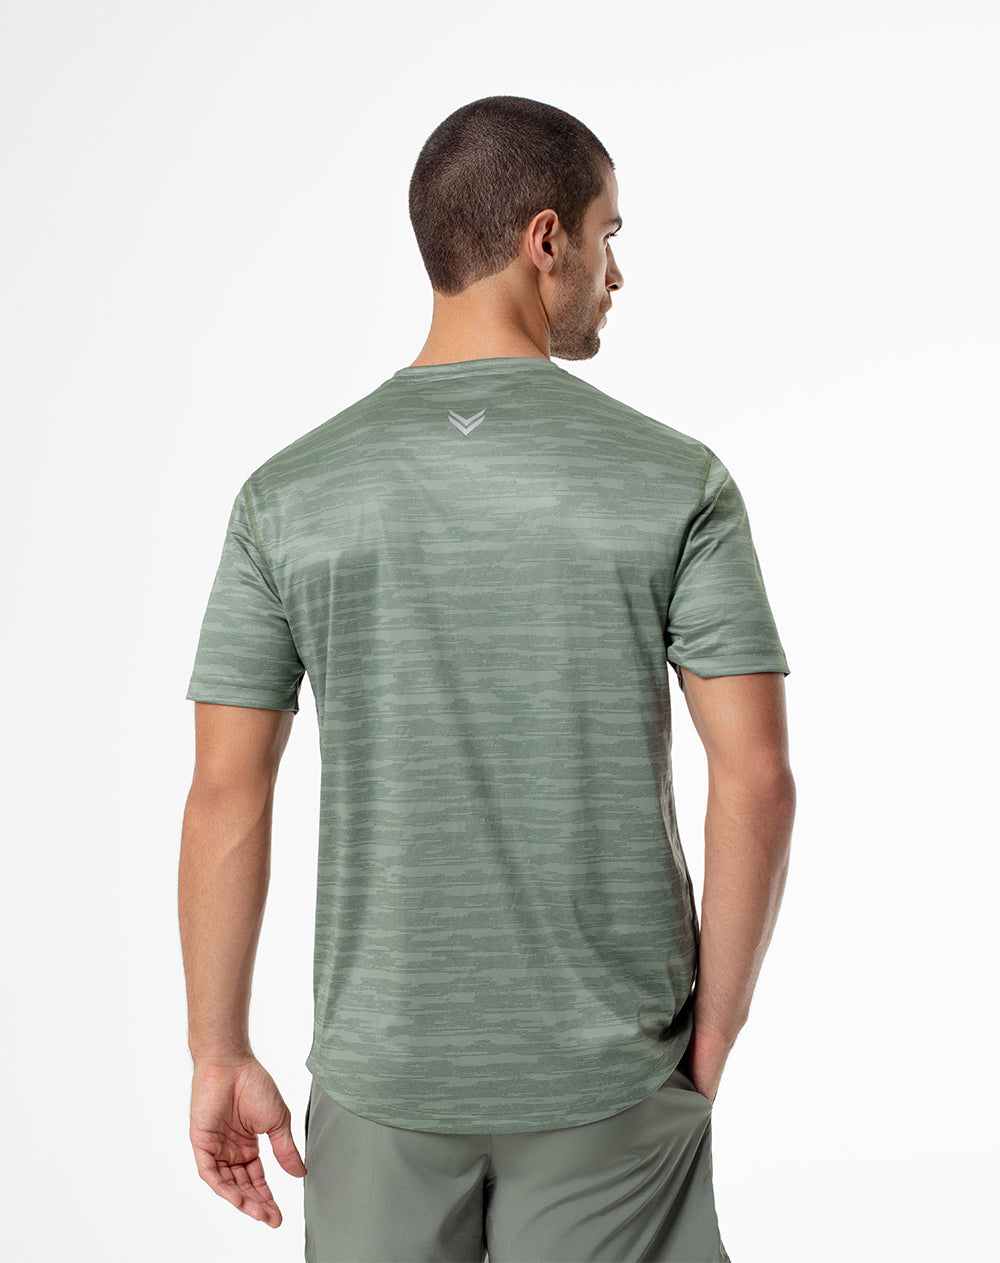 Camiseta slim fit manga corta verde estampada